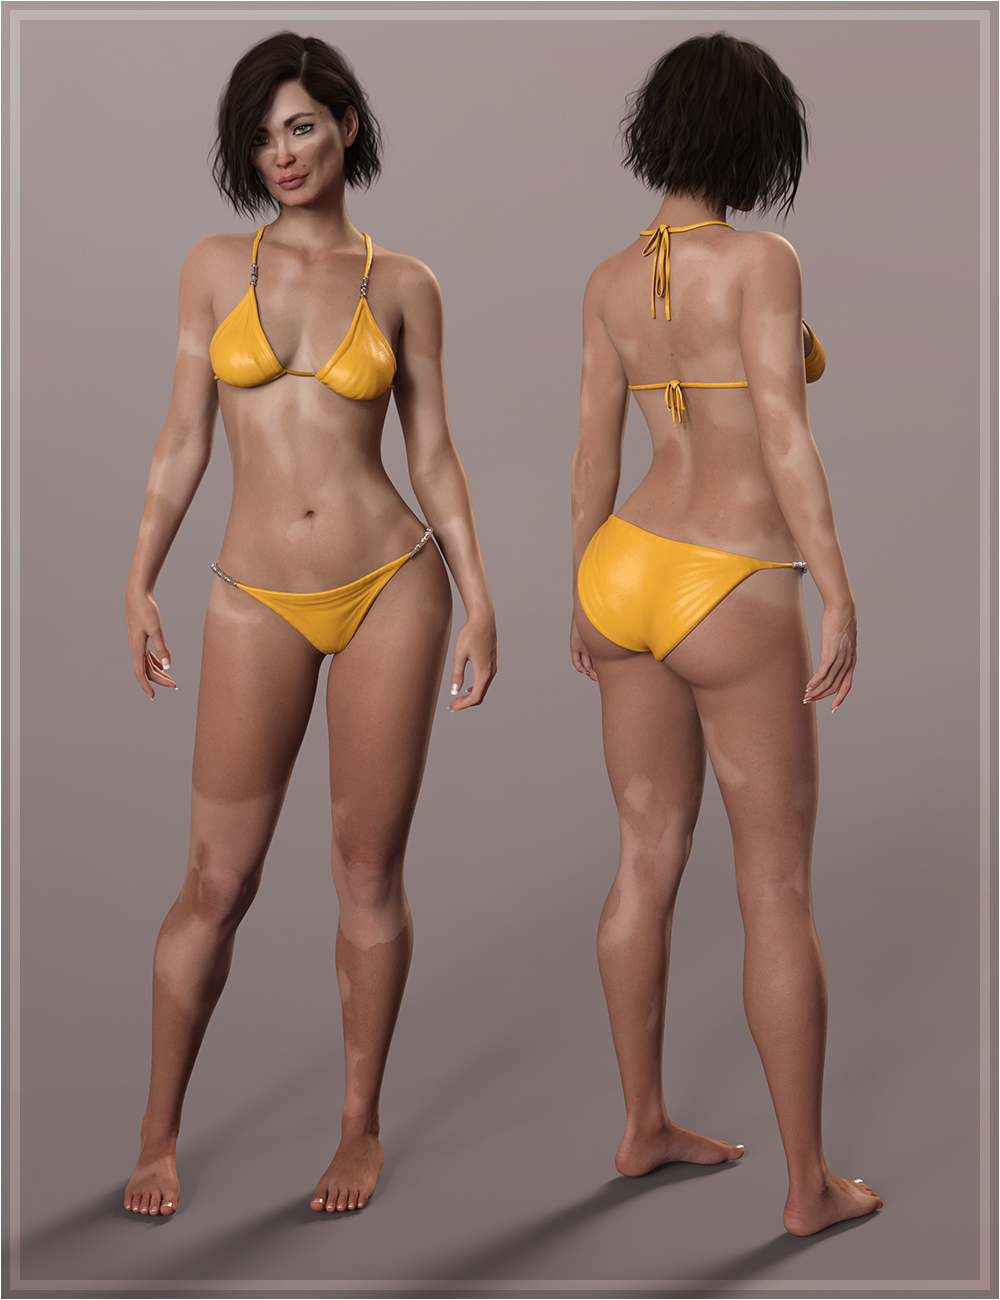 Meadow for Genesis 8 Female by: hotlilme74OziChick, 3D Models by Daz 3D